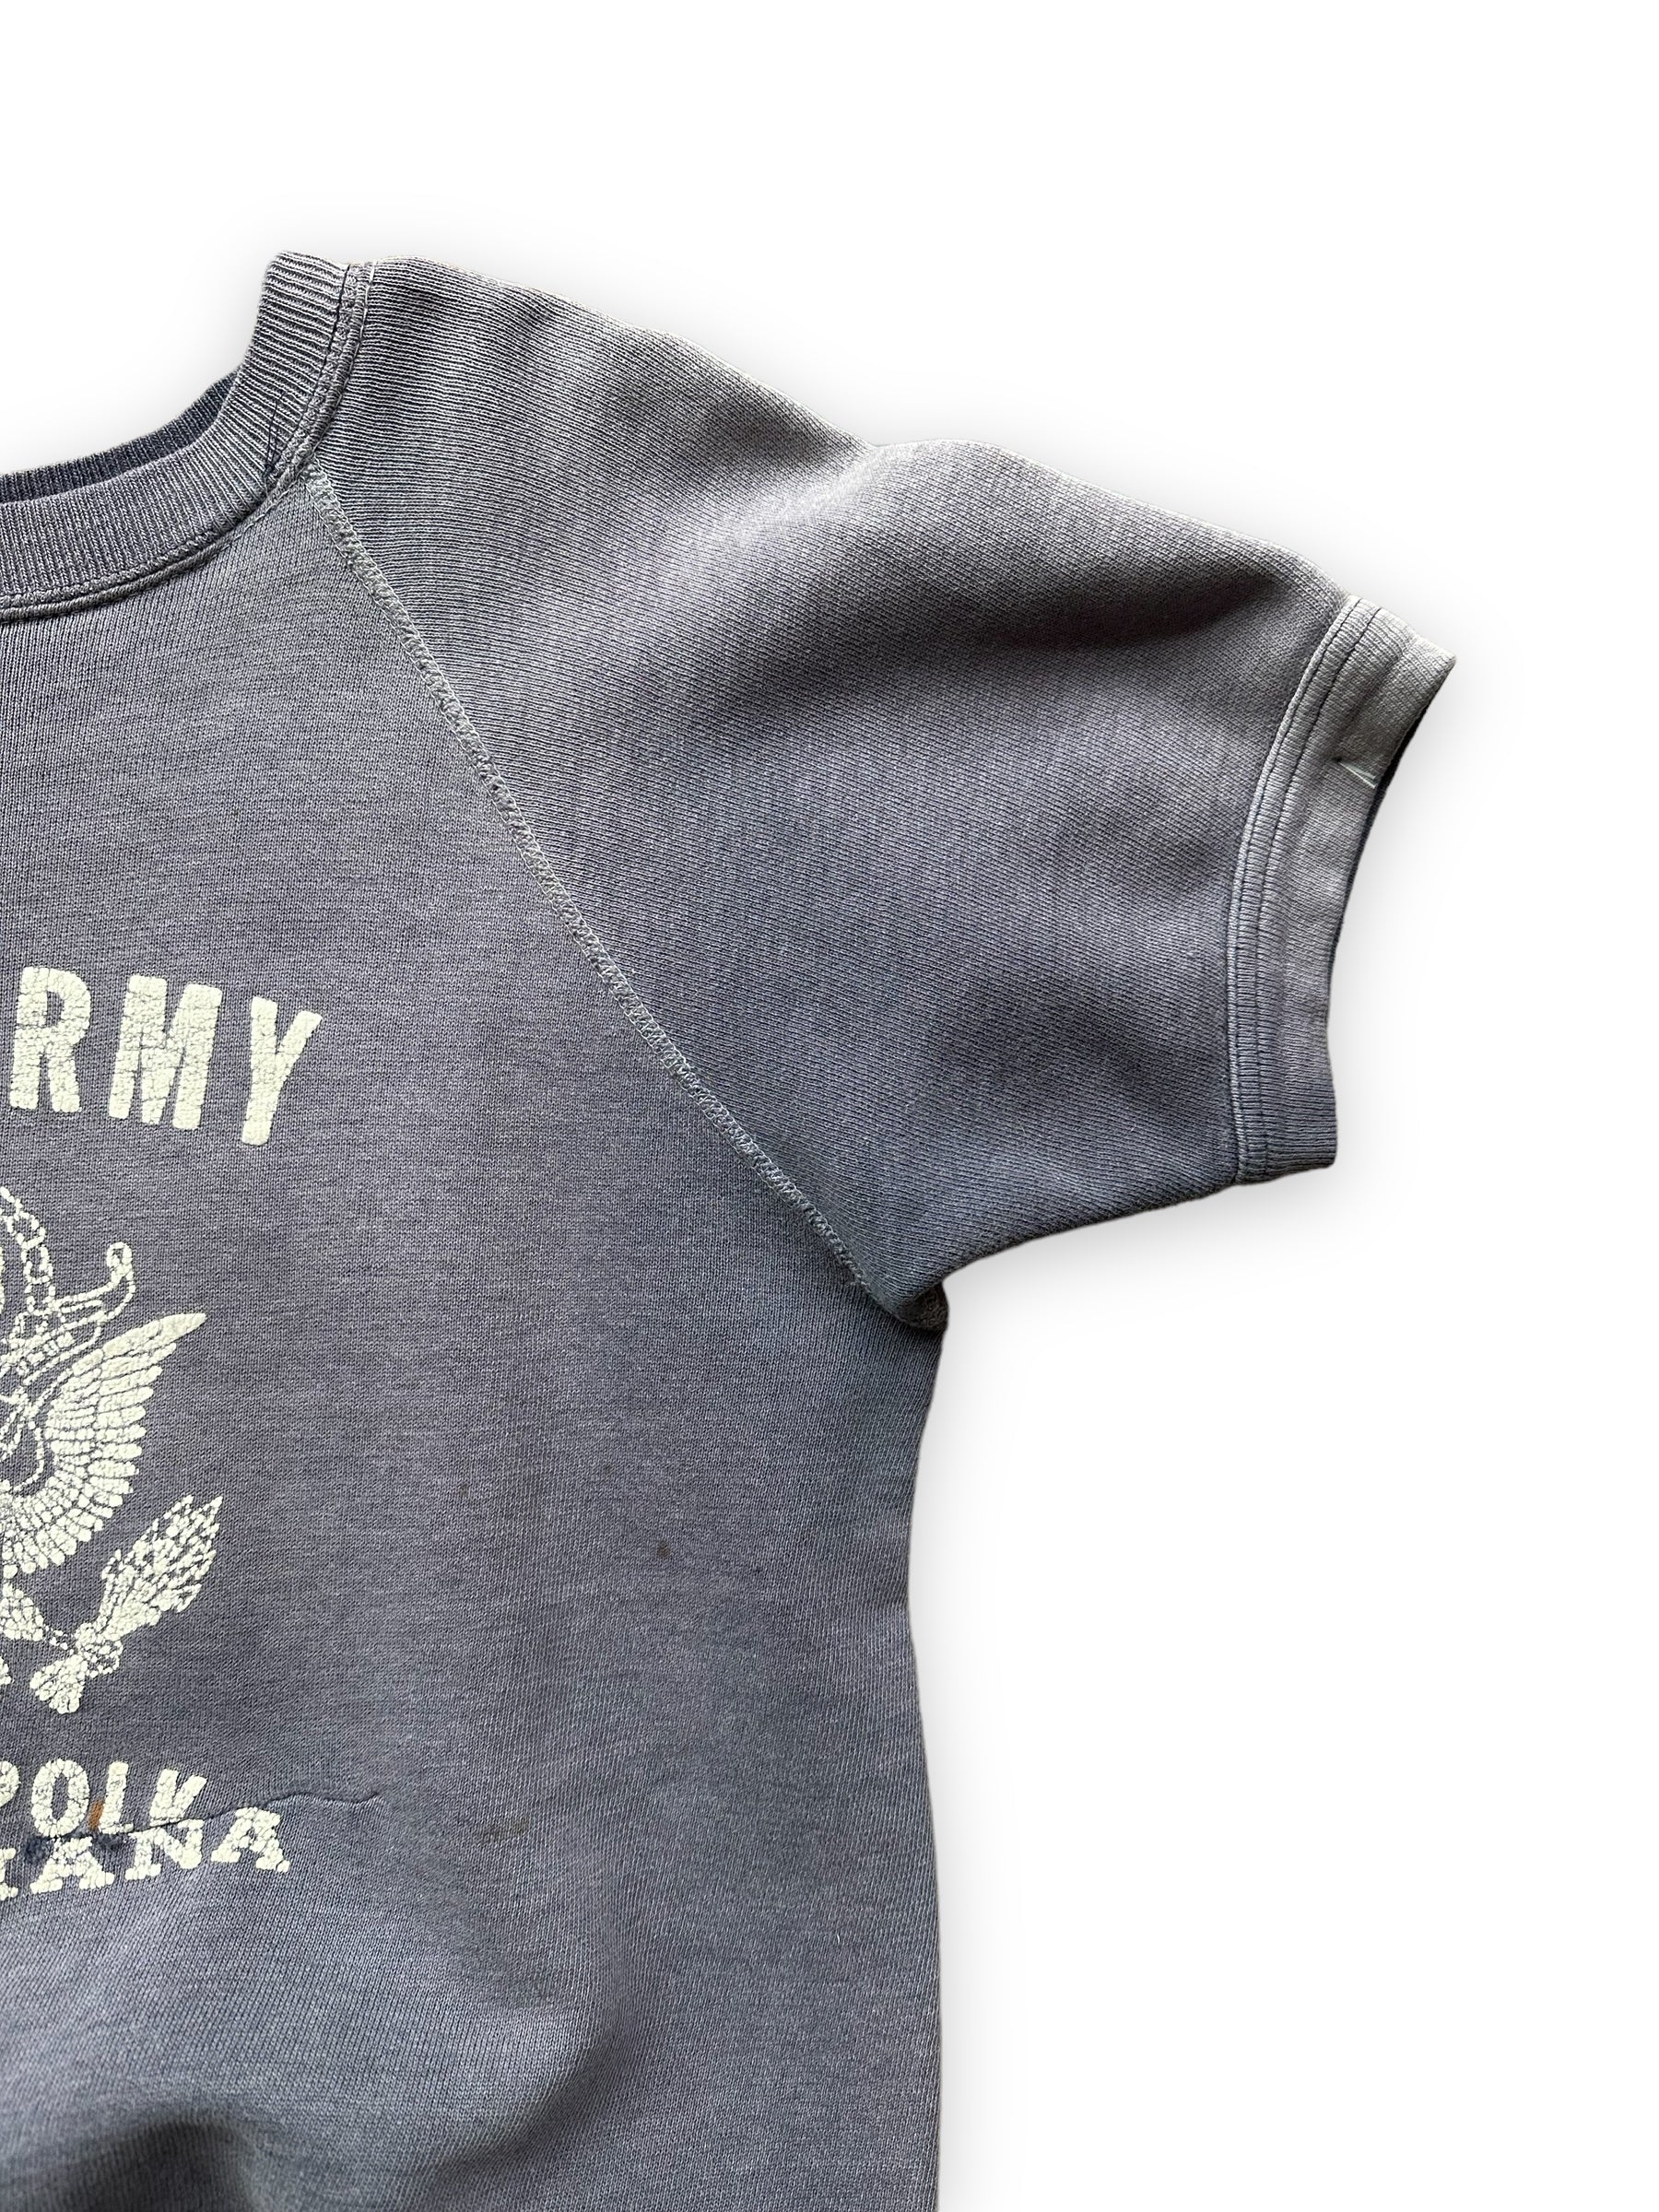 Left Sleeve View on Vintage US Army Fort Polk Short Sleeve Sweatshirt SZ M | Vintage Crewneck Sweatshirts | Barn Owl Vintage Seattle